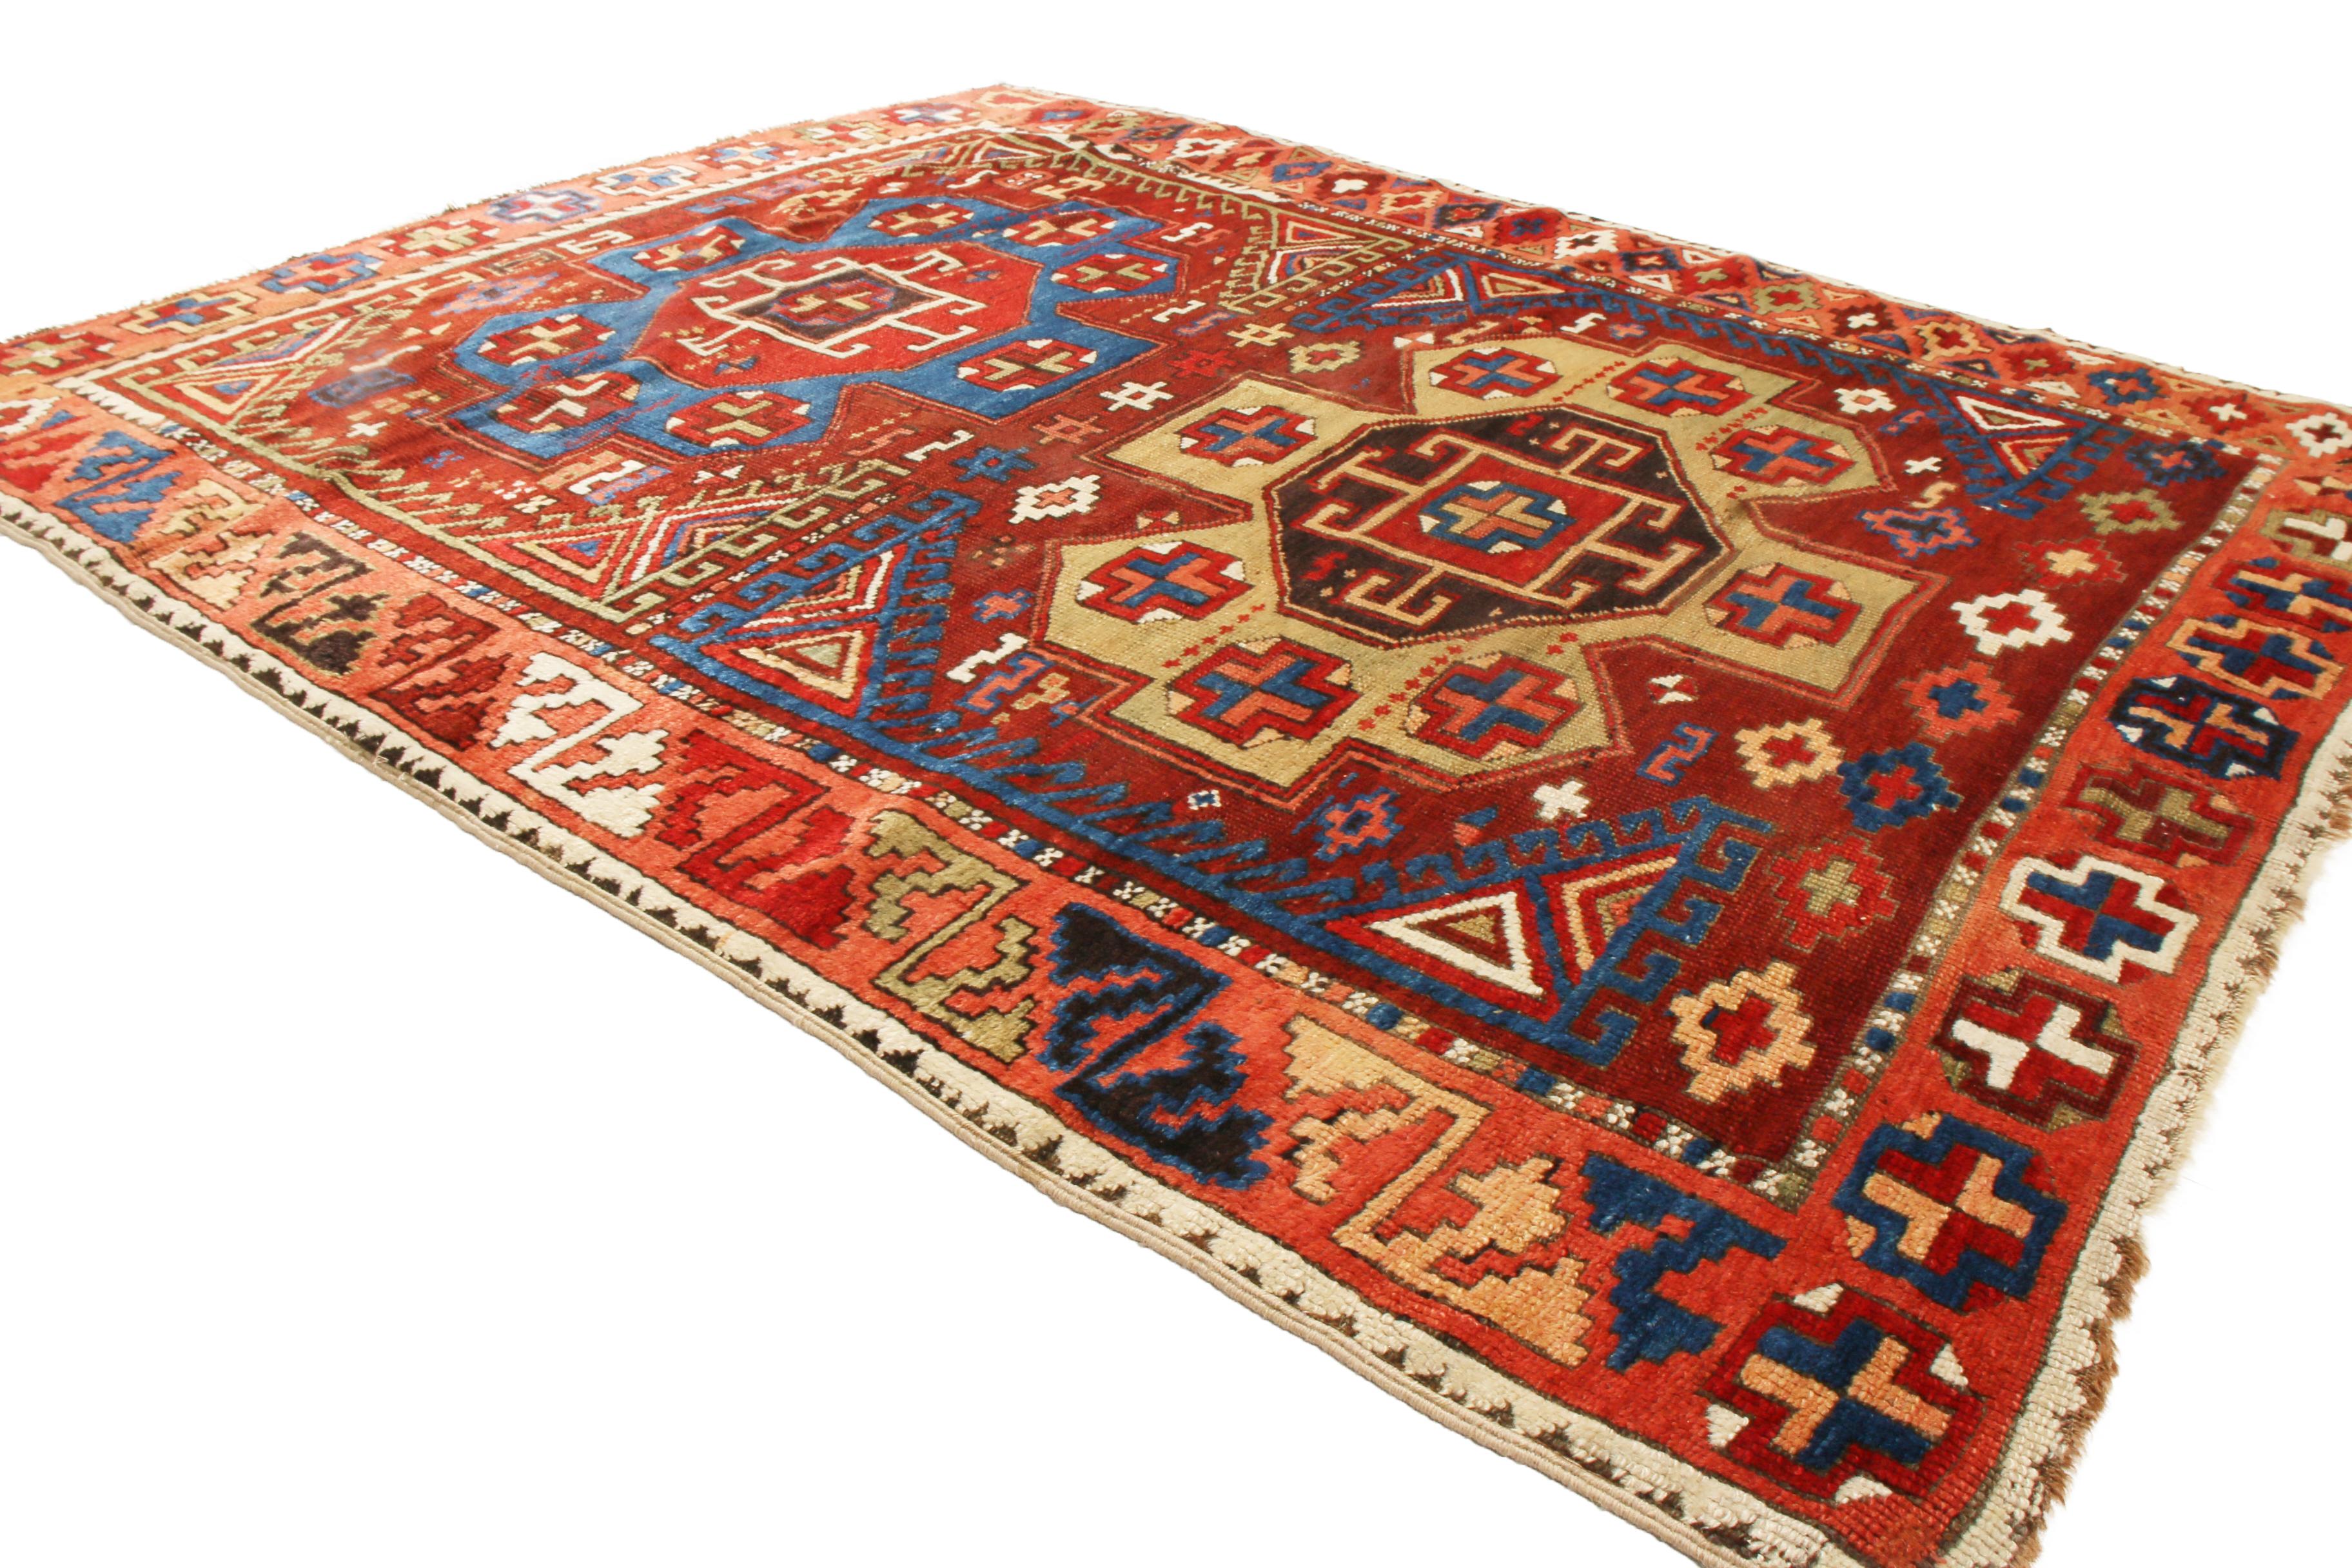 Originaire de Turquie entre 1900 et 1920, ce tapis Yuruk traditionnel antique présente deux médaillons géométriques distincts avec des symboles Gul centraux en beige et bleu sur un riche fond rouge bordeaux. L'originalité de cette pièce réside dans